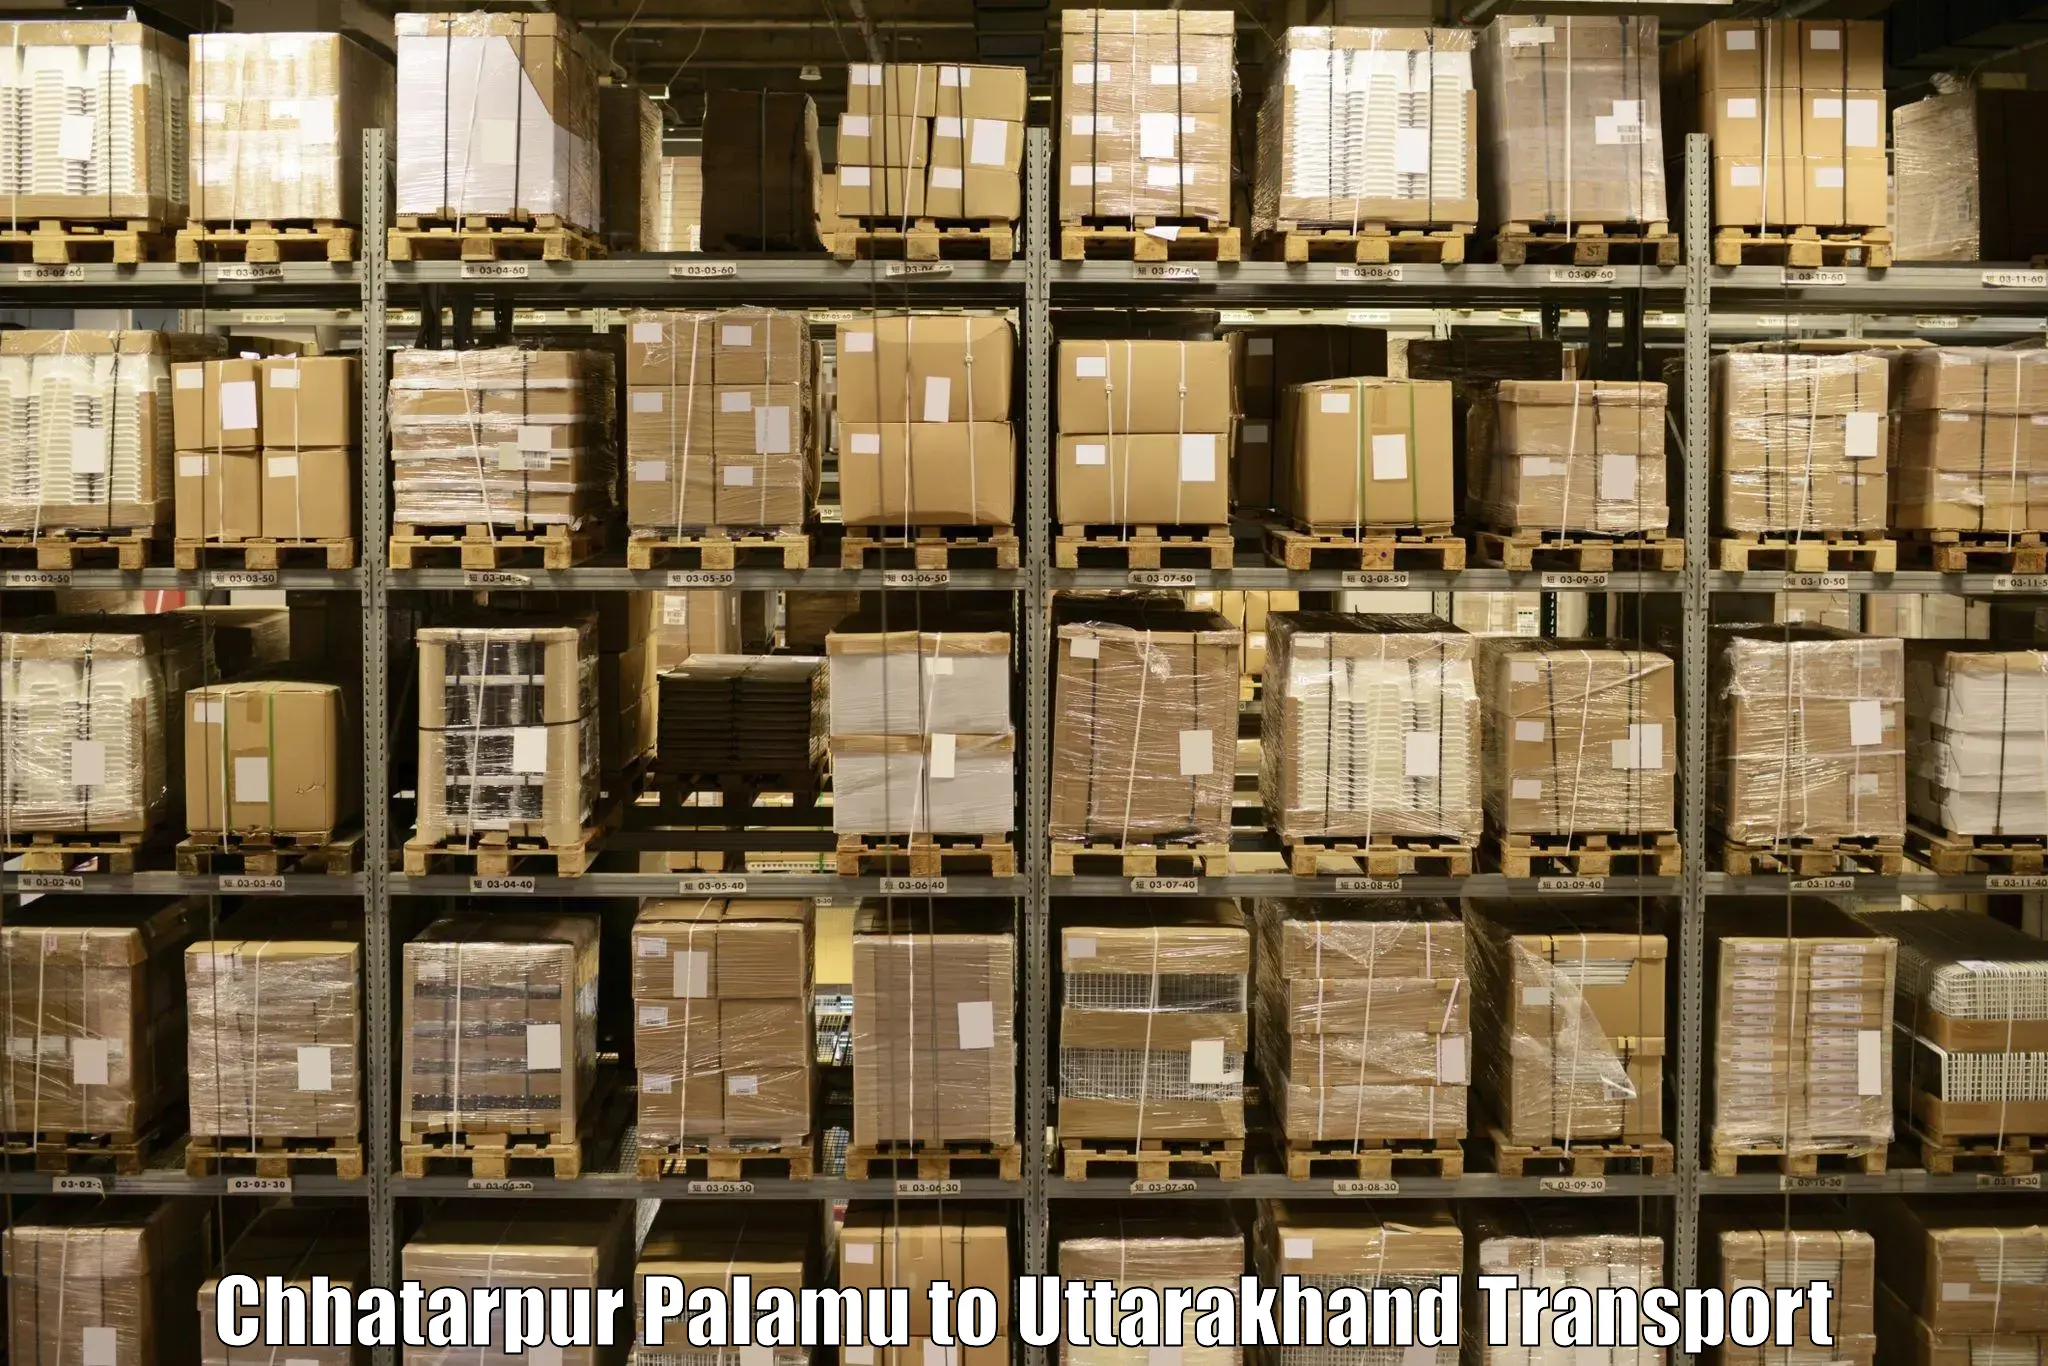 International cargo transportation services Chhatarpur Palamu to Kotdwara